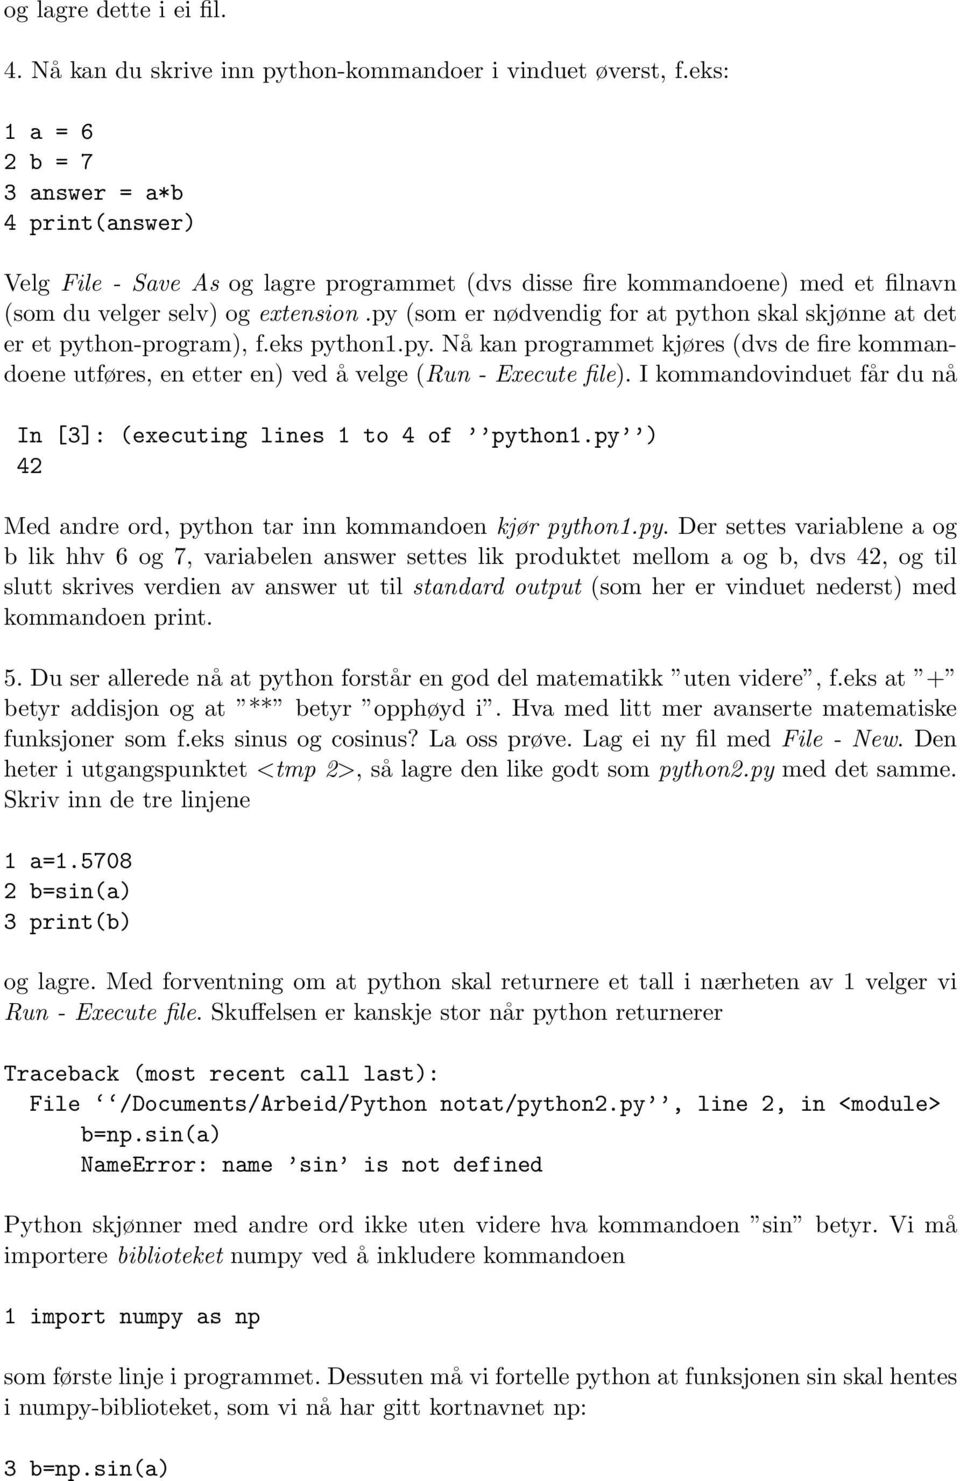 py (som er nødvendig for at python skal skjønne at det er et python-program), f.eks python1.py. Nå kan programmet kjøres (dvs de fire kommandoene utføres, en etter en) ved å velge (Run - Execute file).